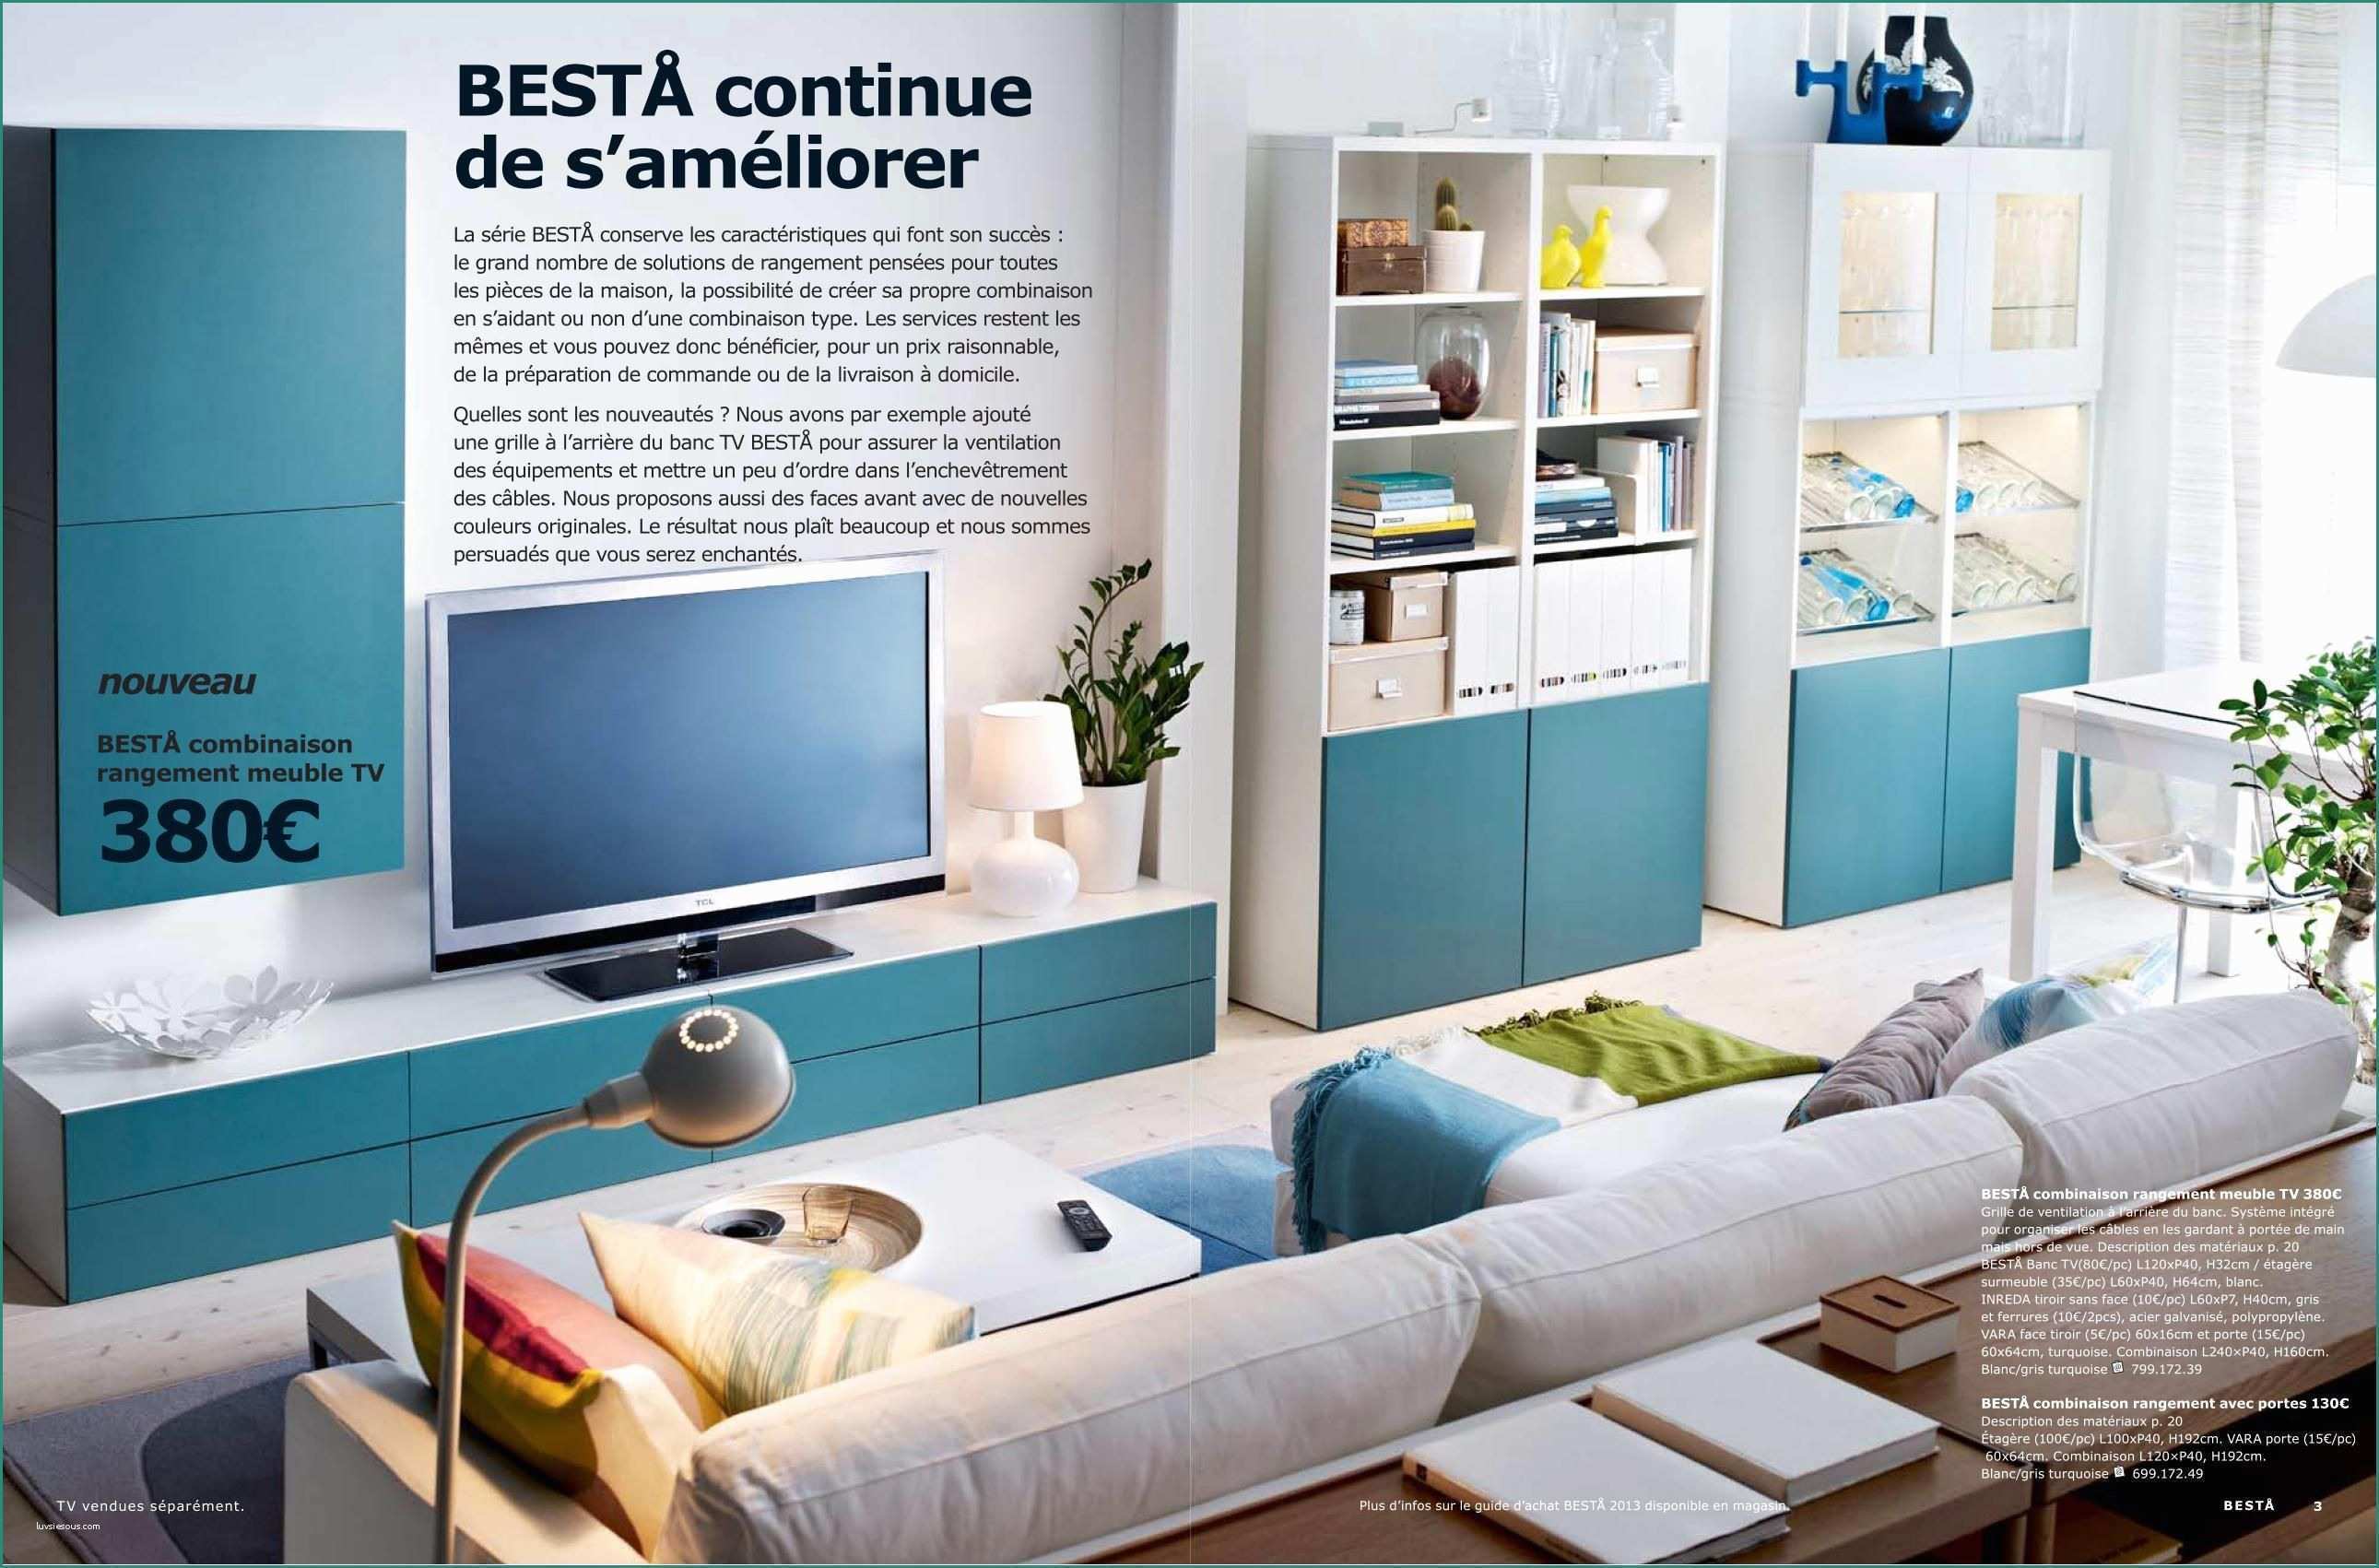 Ikea Planner soggiorno E Ikea Besta solutions De Rangement Bedroom Hallway